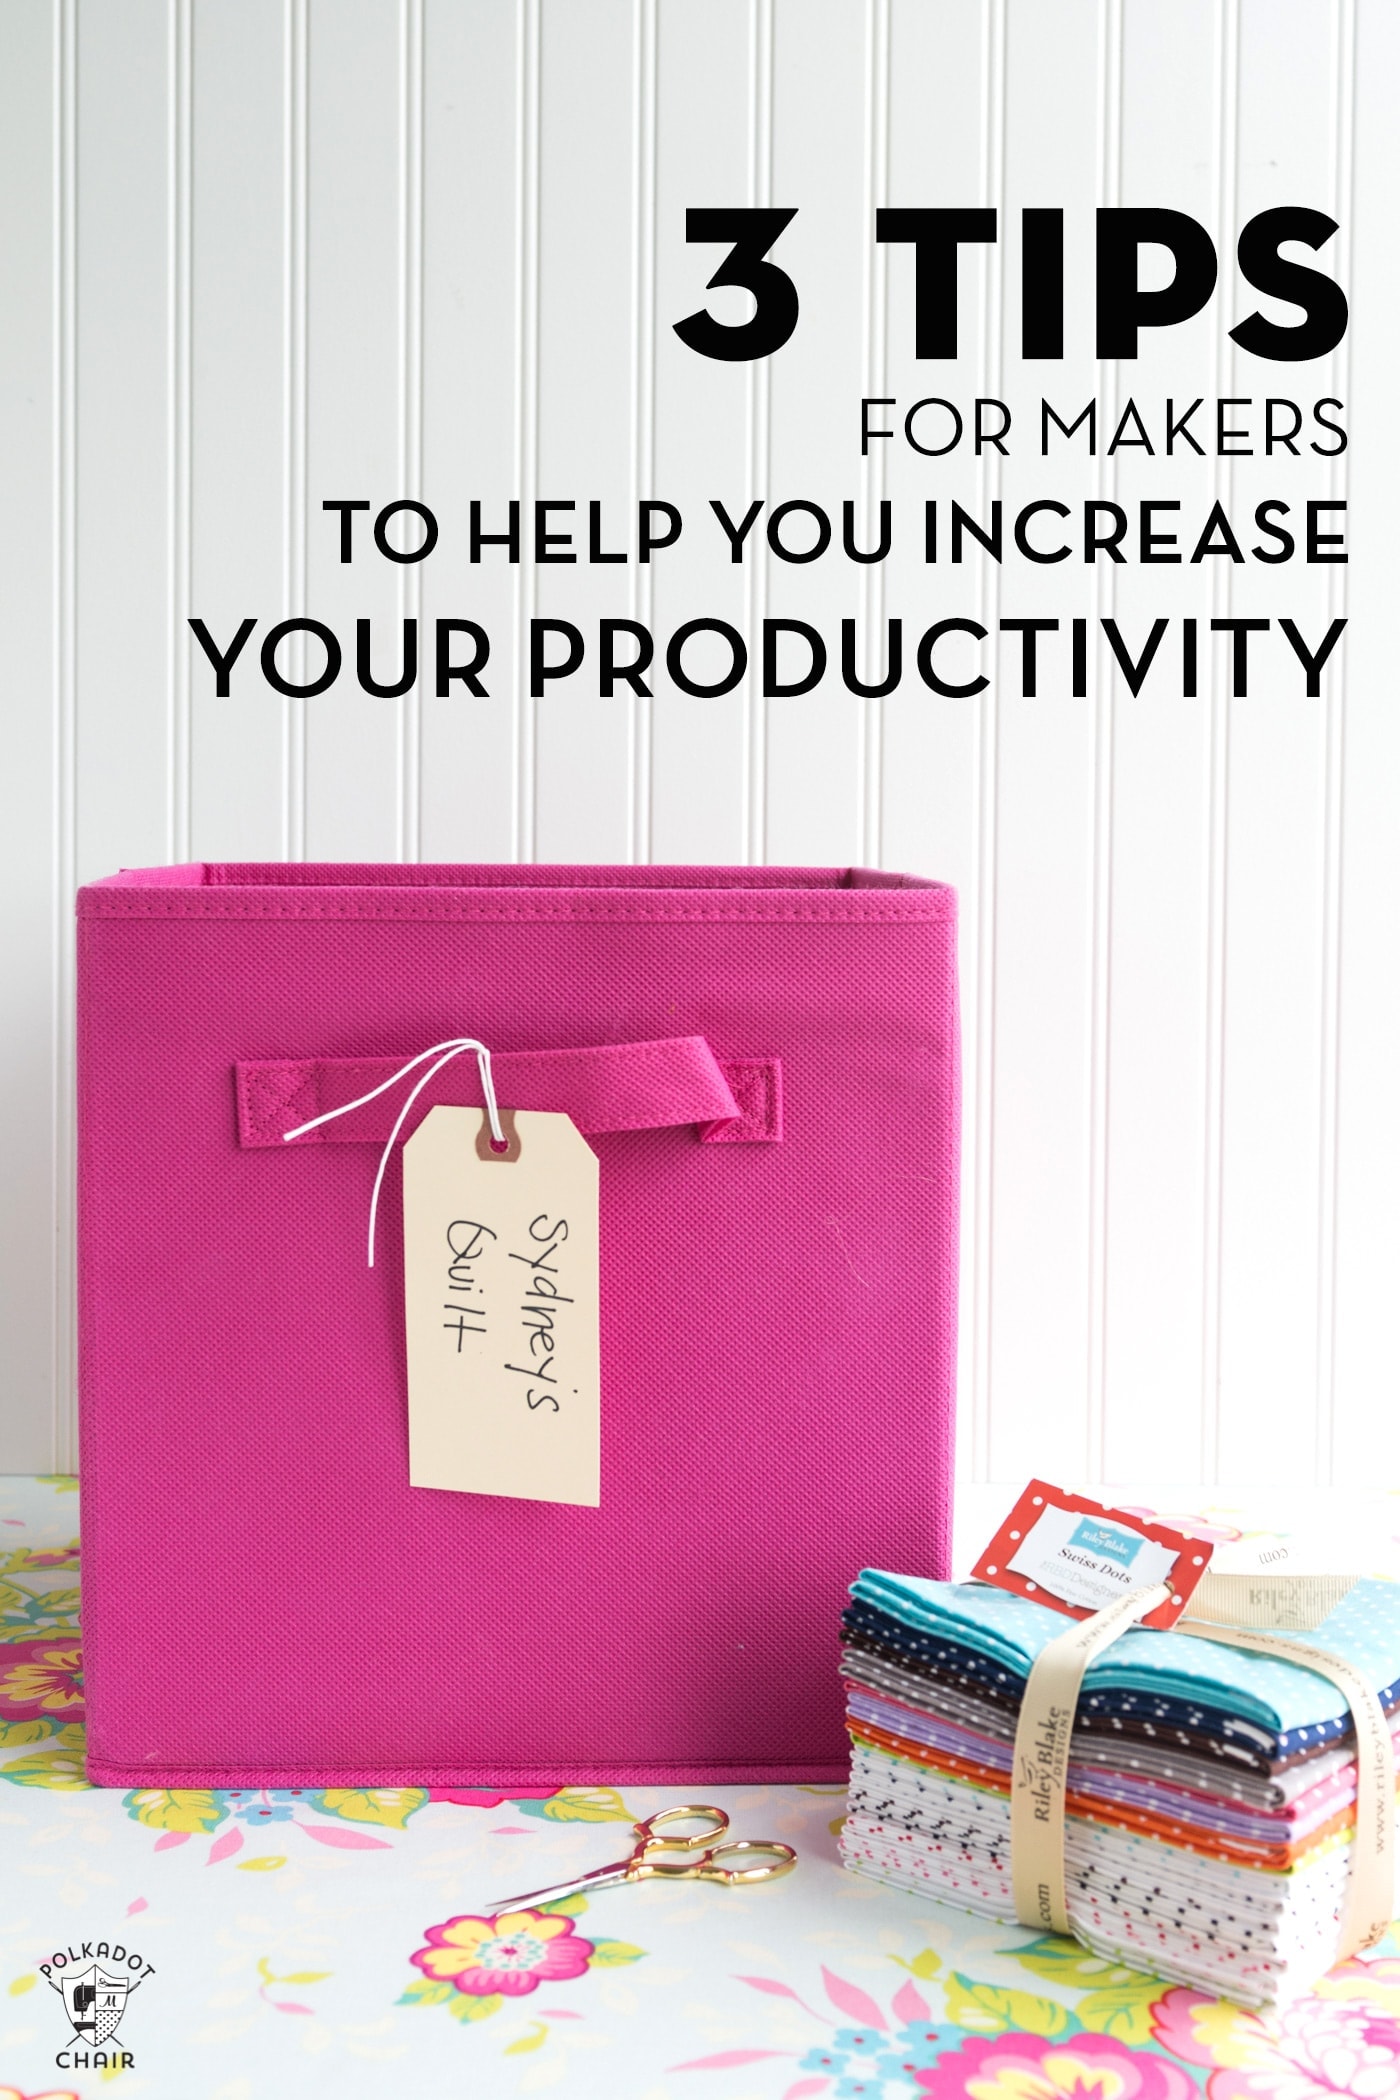 Image de titre pour des conseils de productivité. Une boîte rose contenant du tissu sur une table devant un mur blanc.